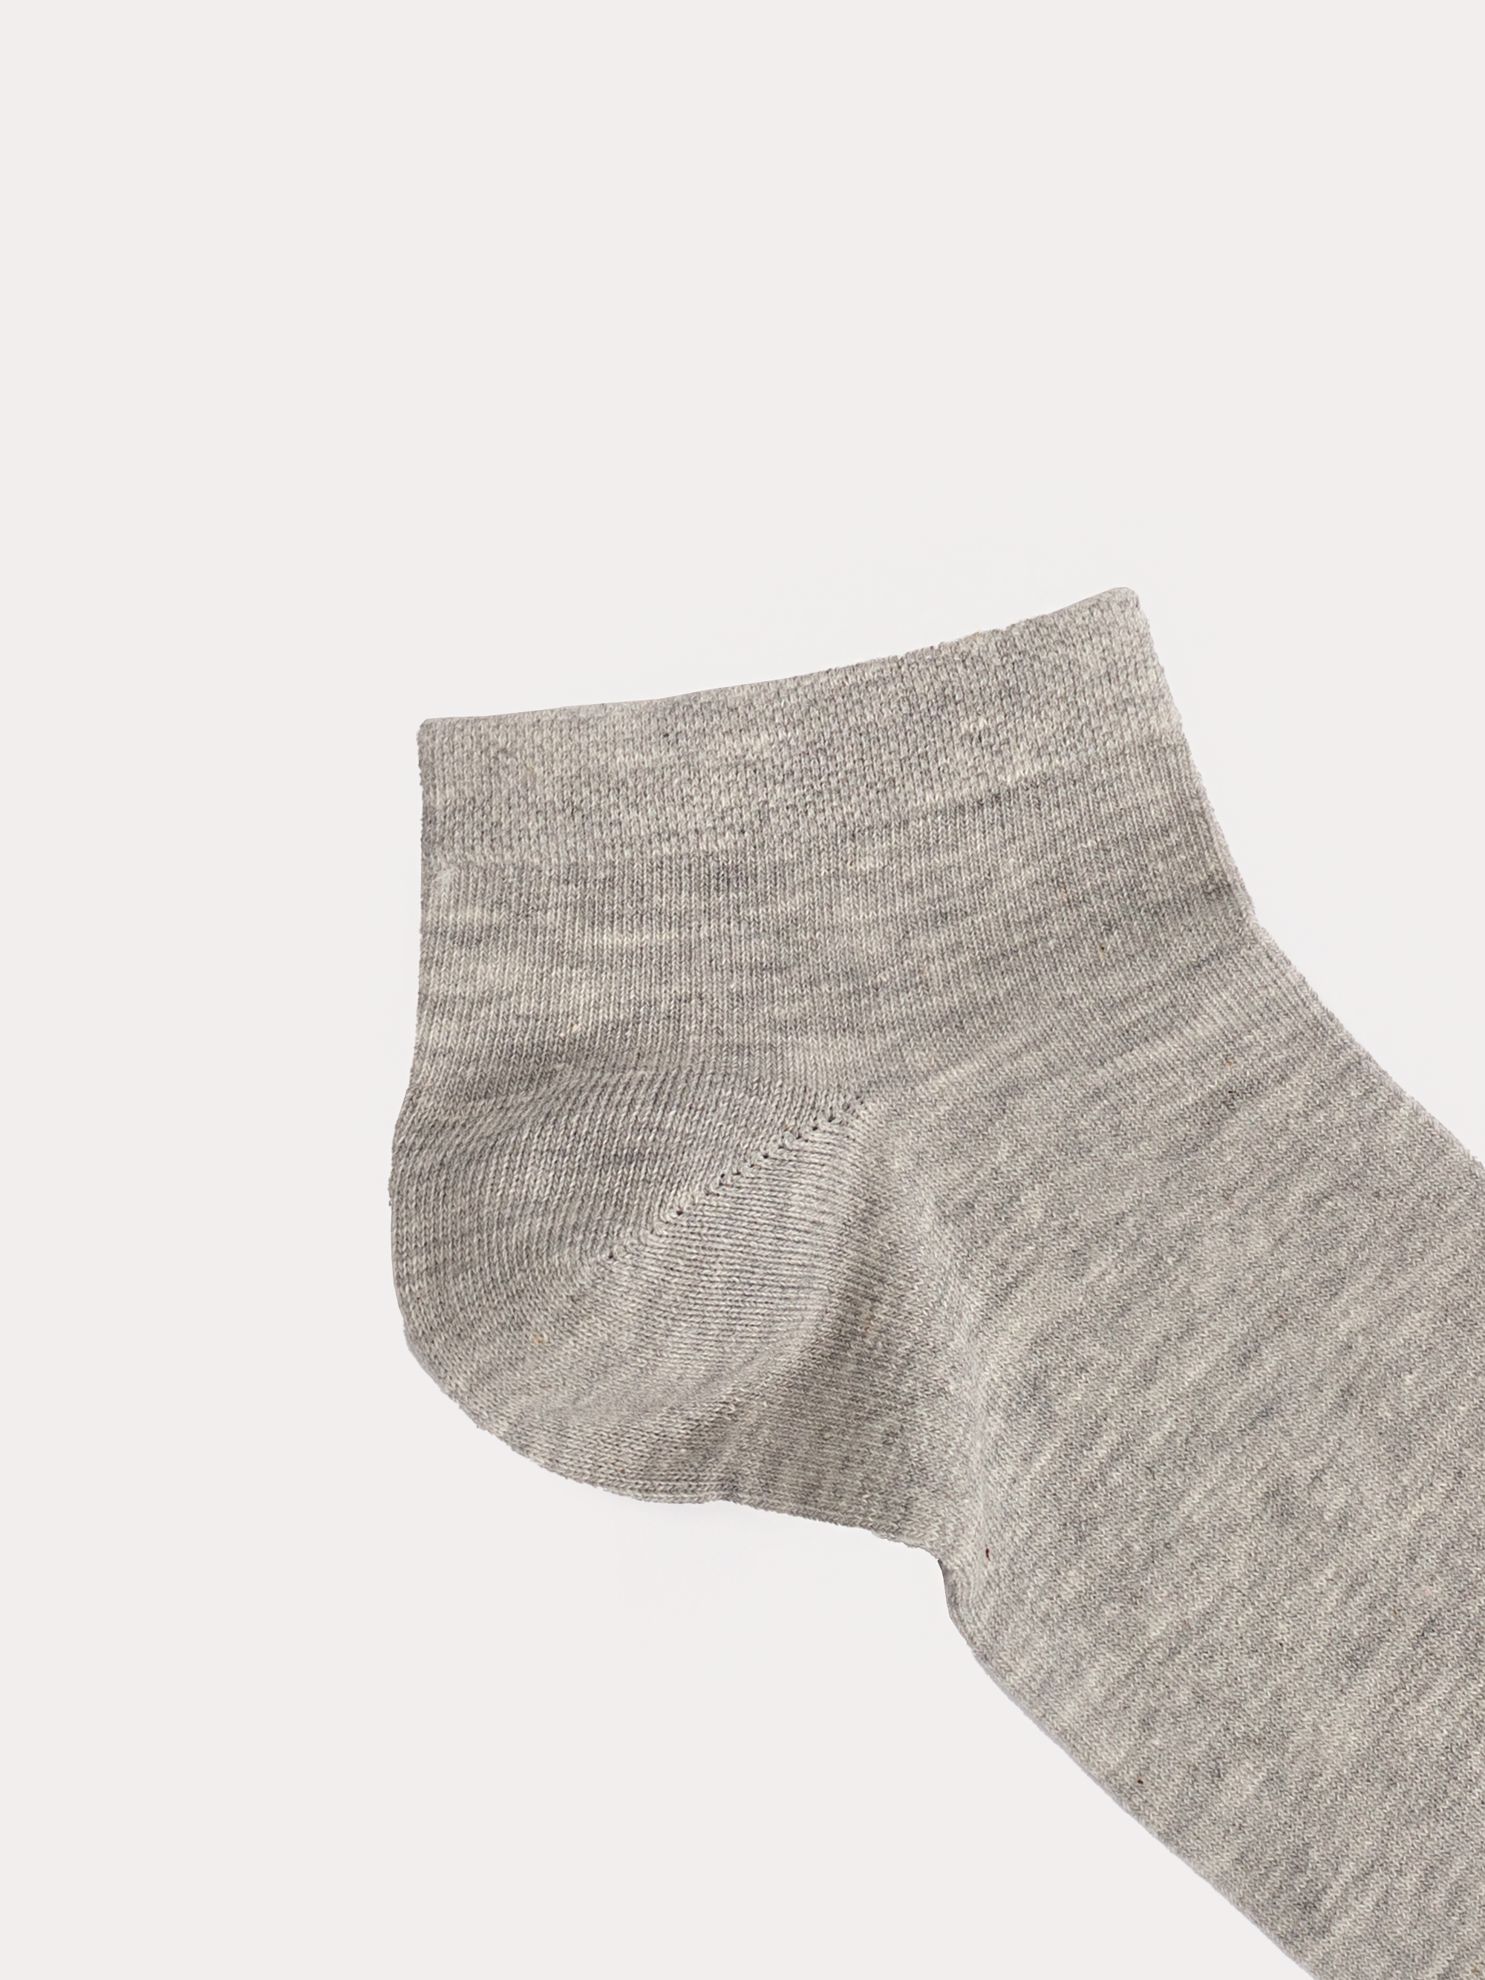 Karaca Erkek Patik Çorap-Gri Melanj. ürün görseli